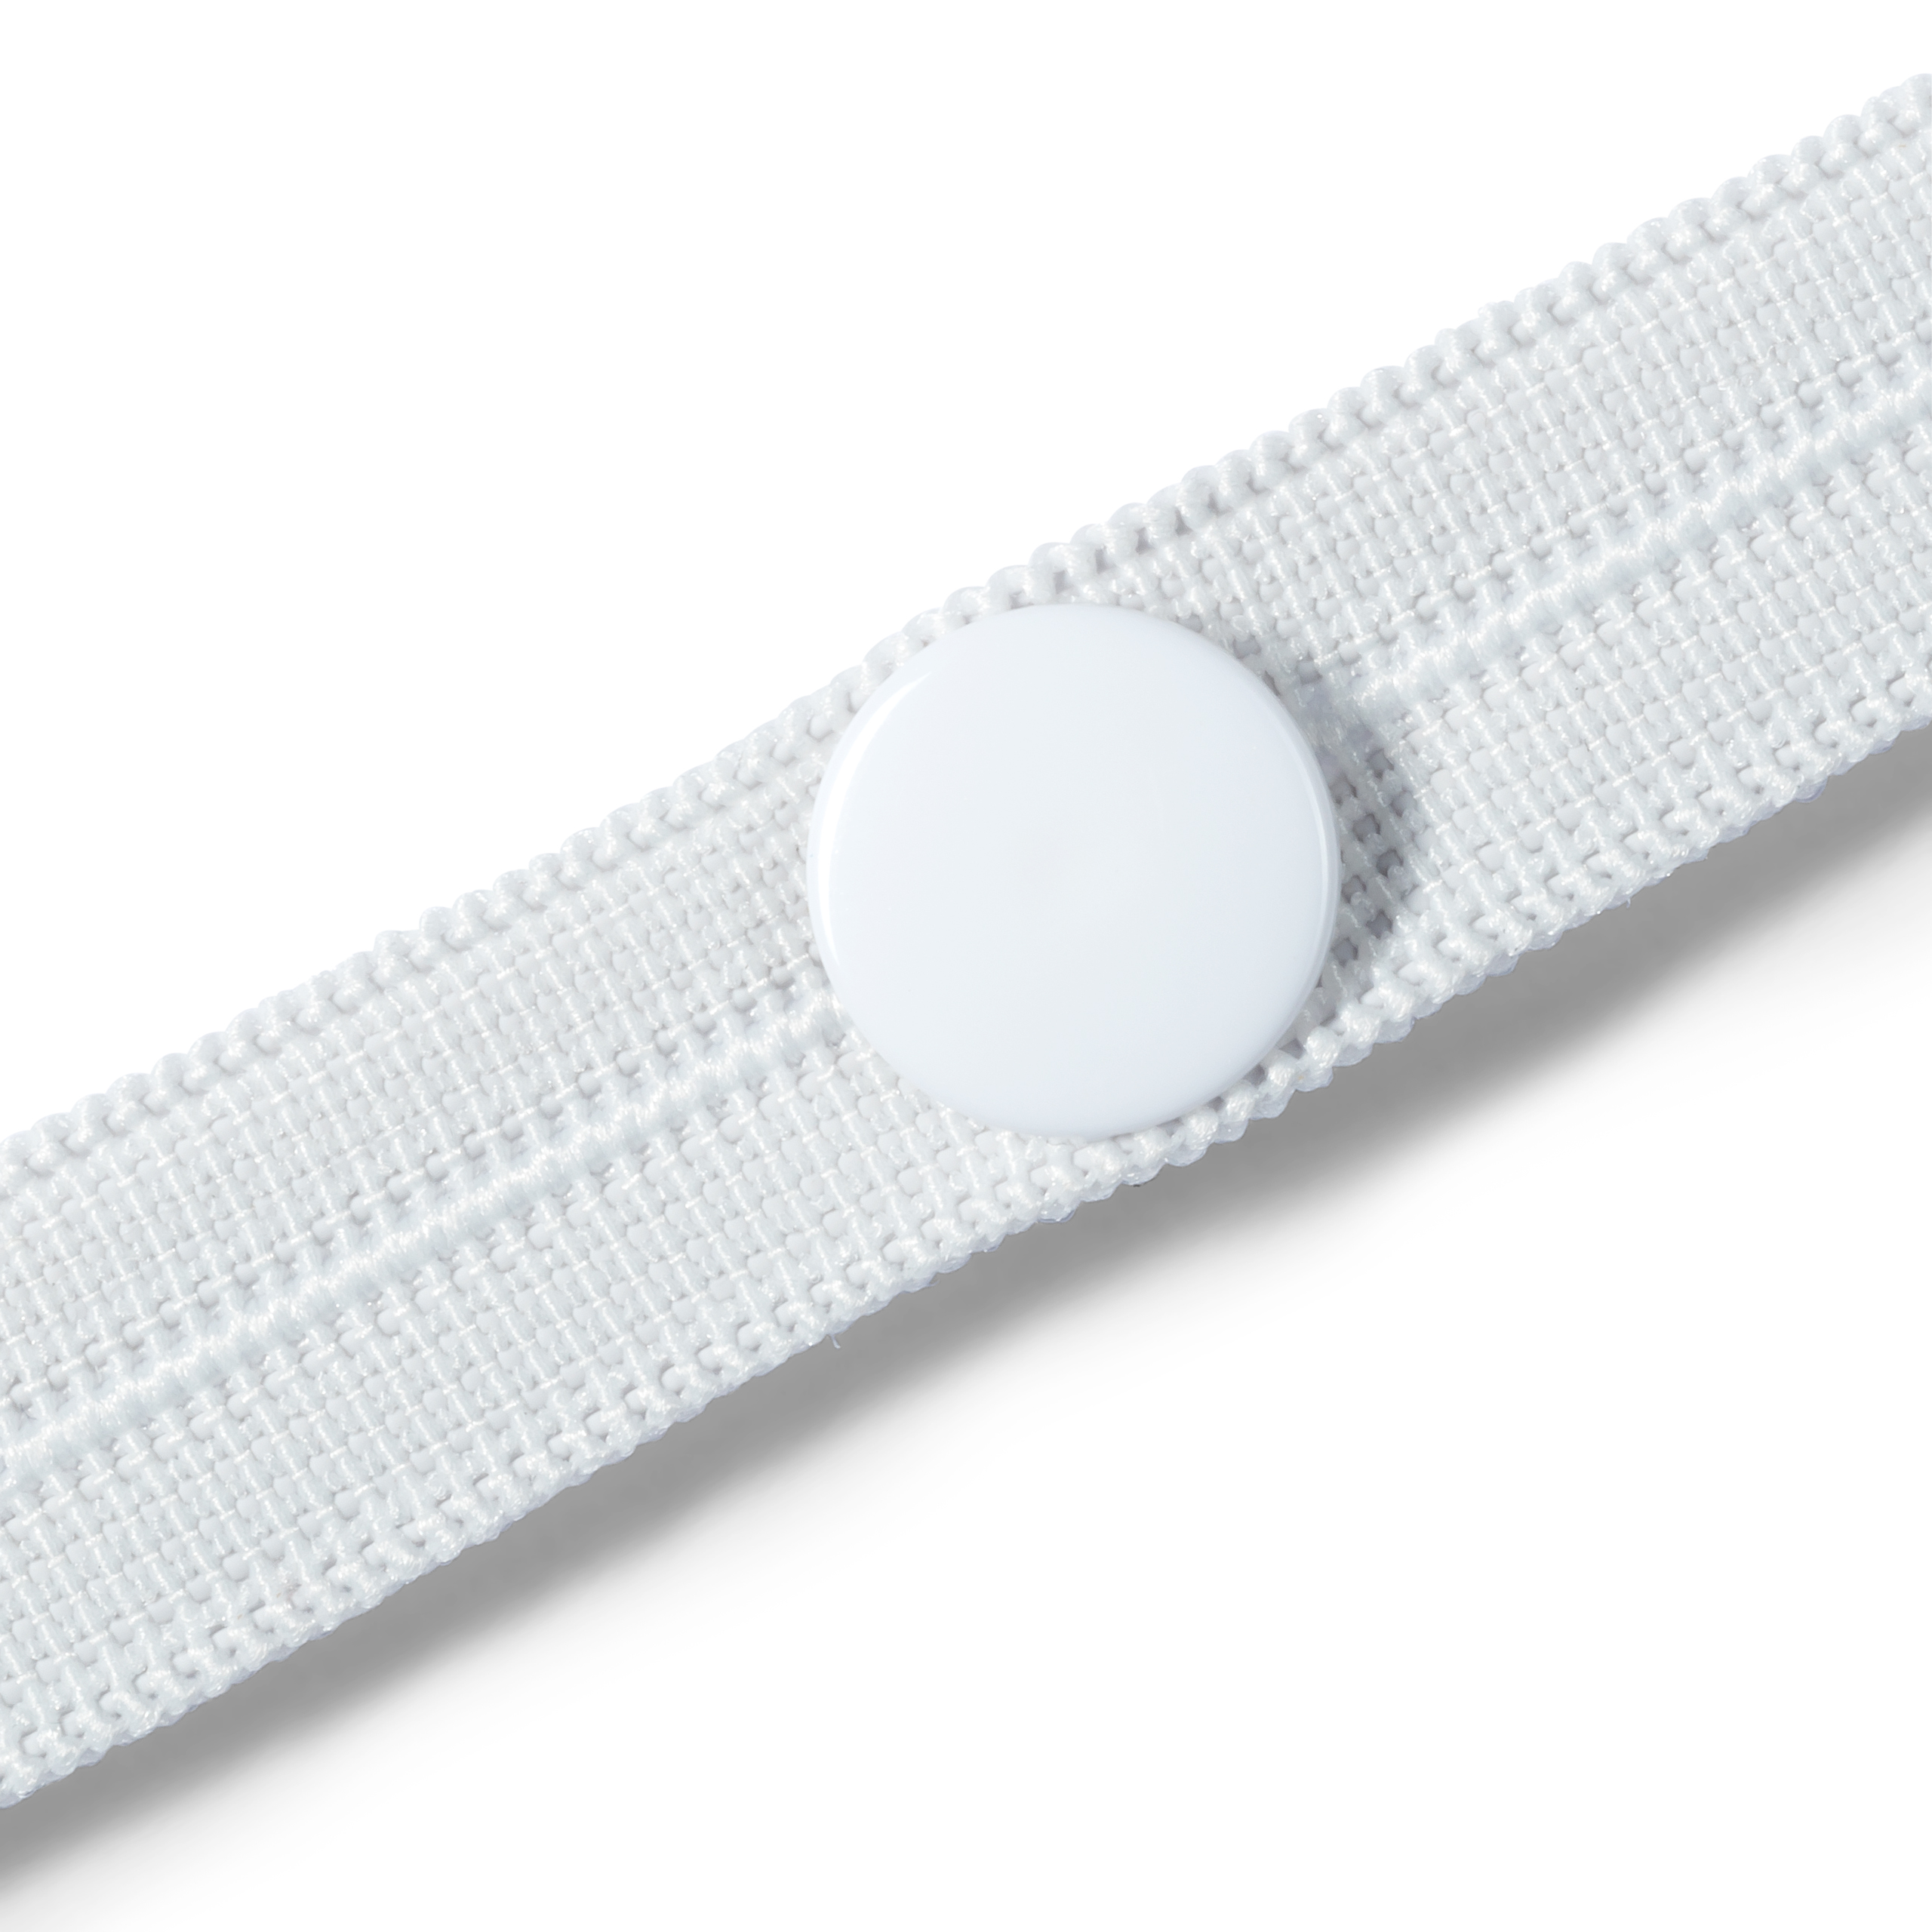 Knopfloch-Elastic mit 3 Knöpfen 12 mm weiß, 3 m